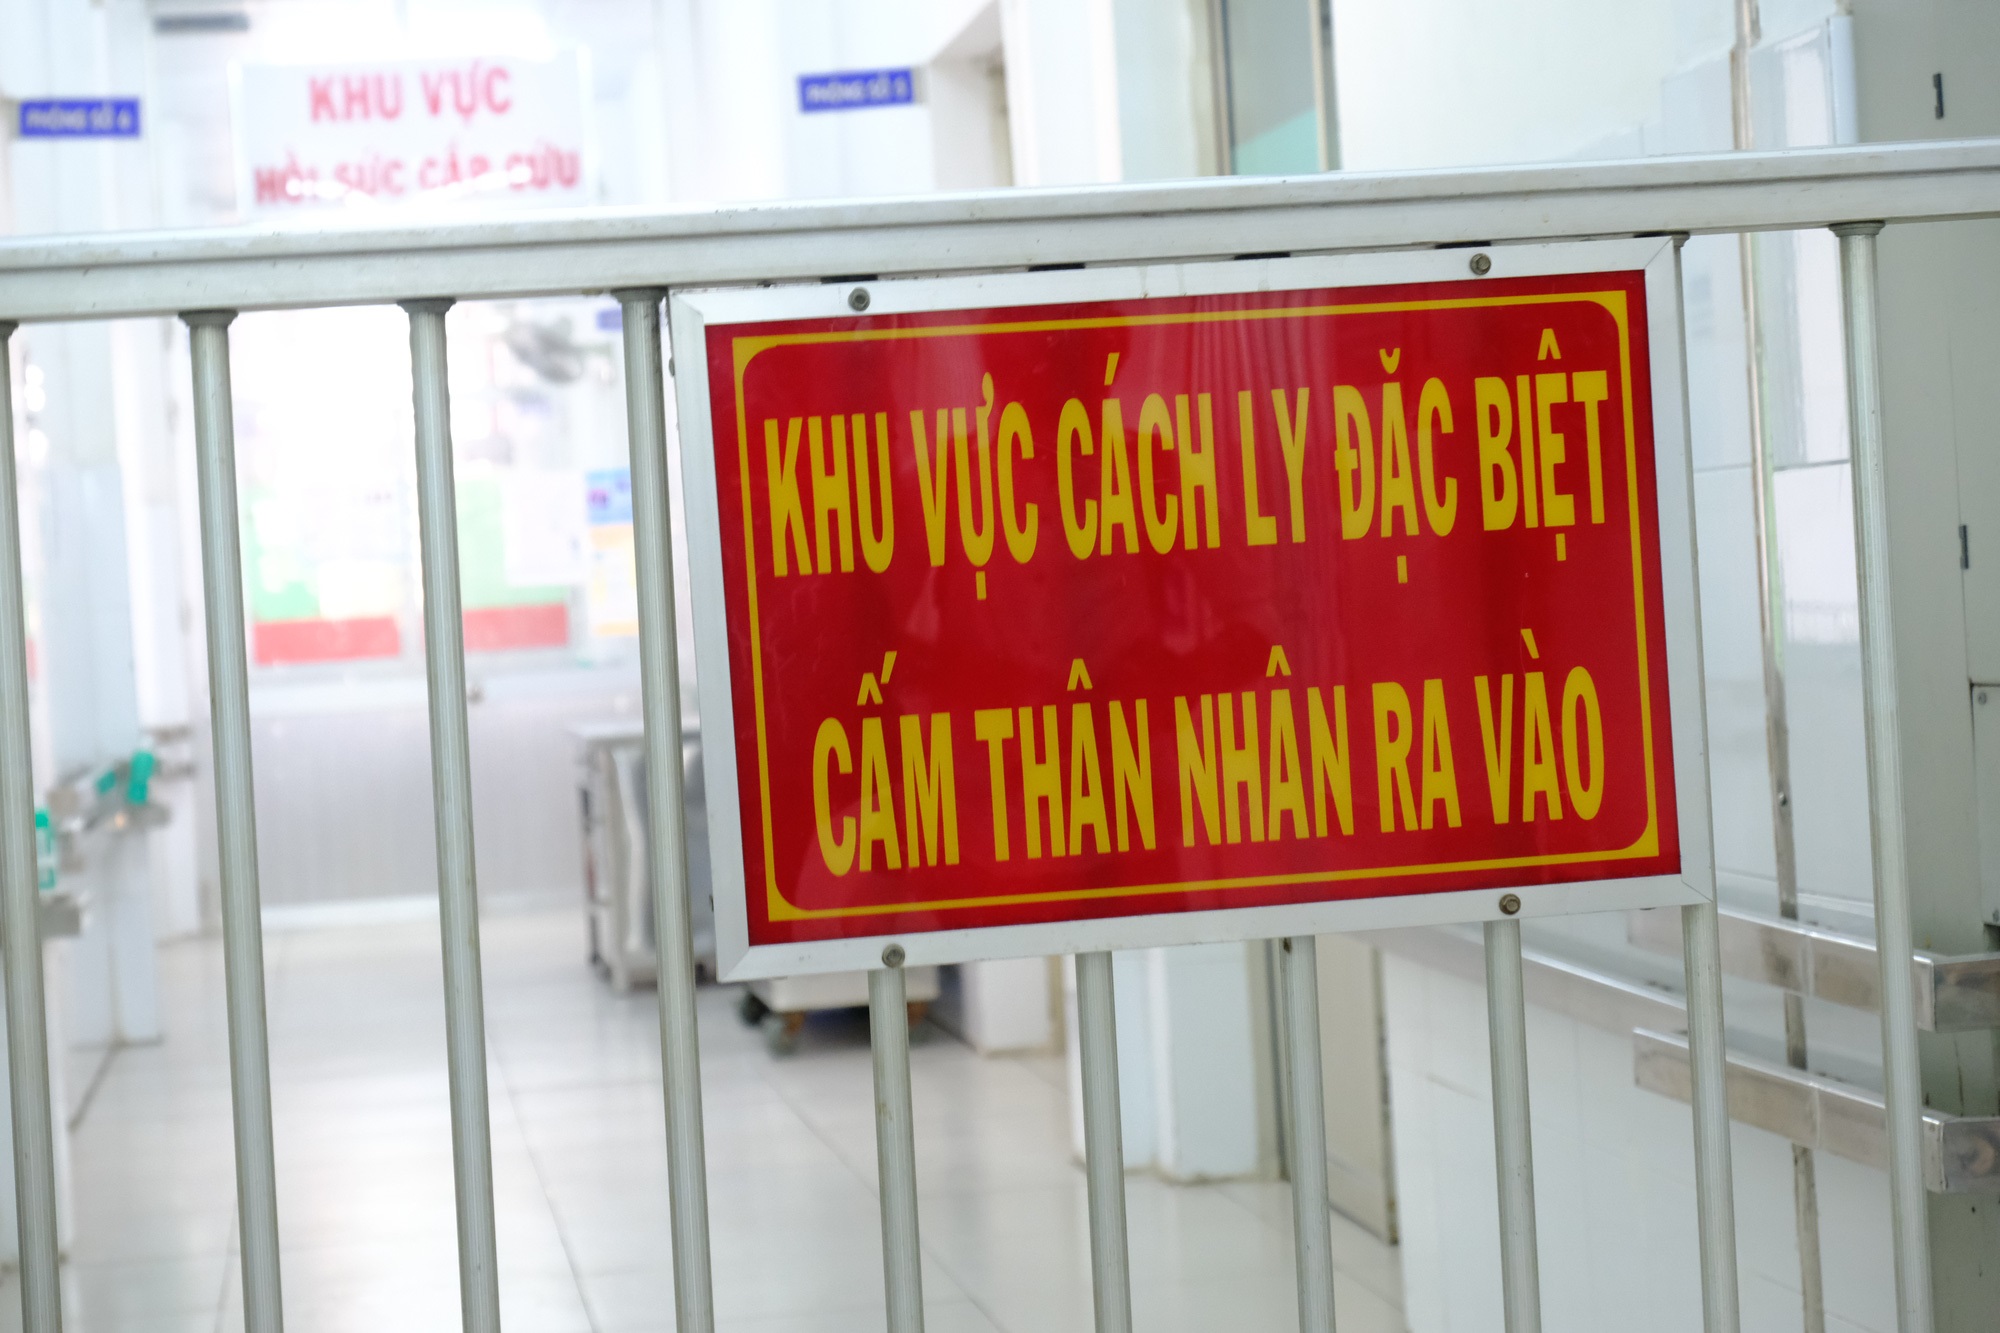 Gia đình nghệ sĩ Lý Huỳnh, Lý Hùng tặng Bệnh viện Chợ Rẫy máy thở 500 triệu đồng để phòng chống Covid-19 - Ảnh 3